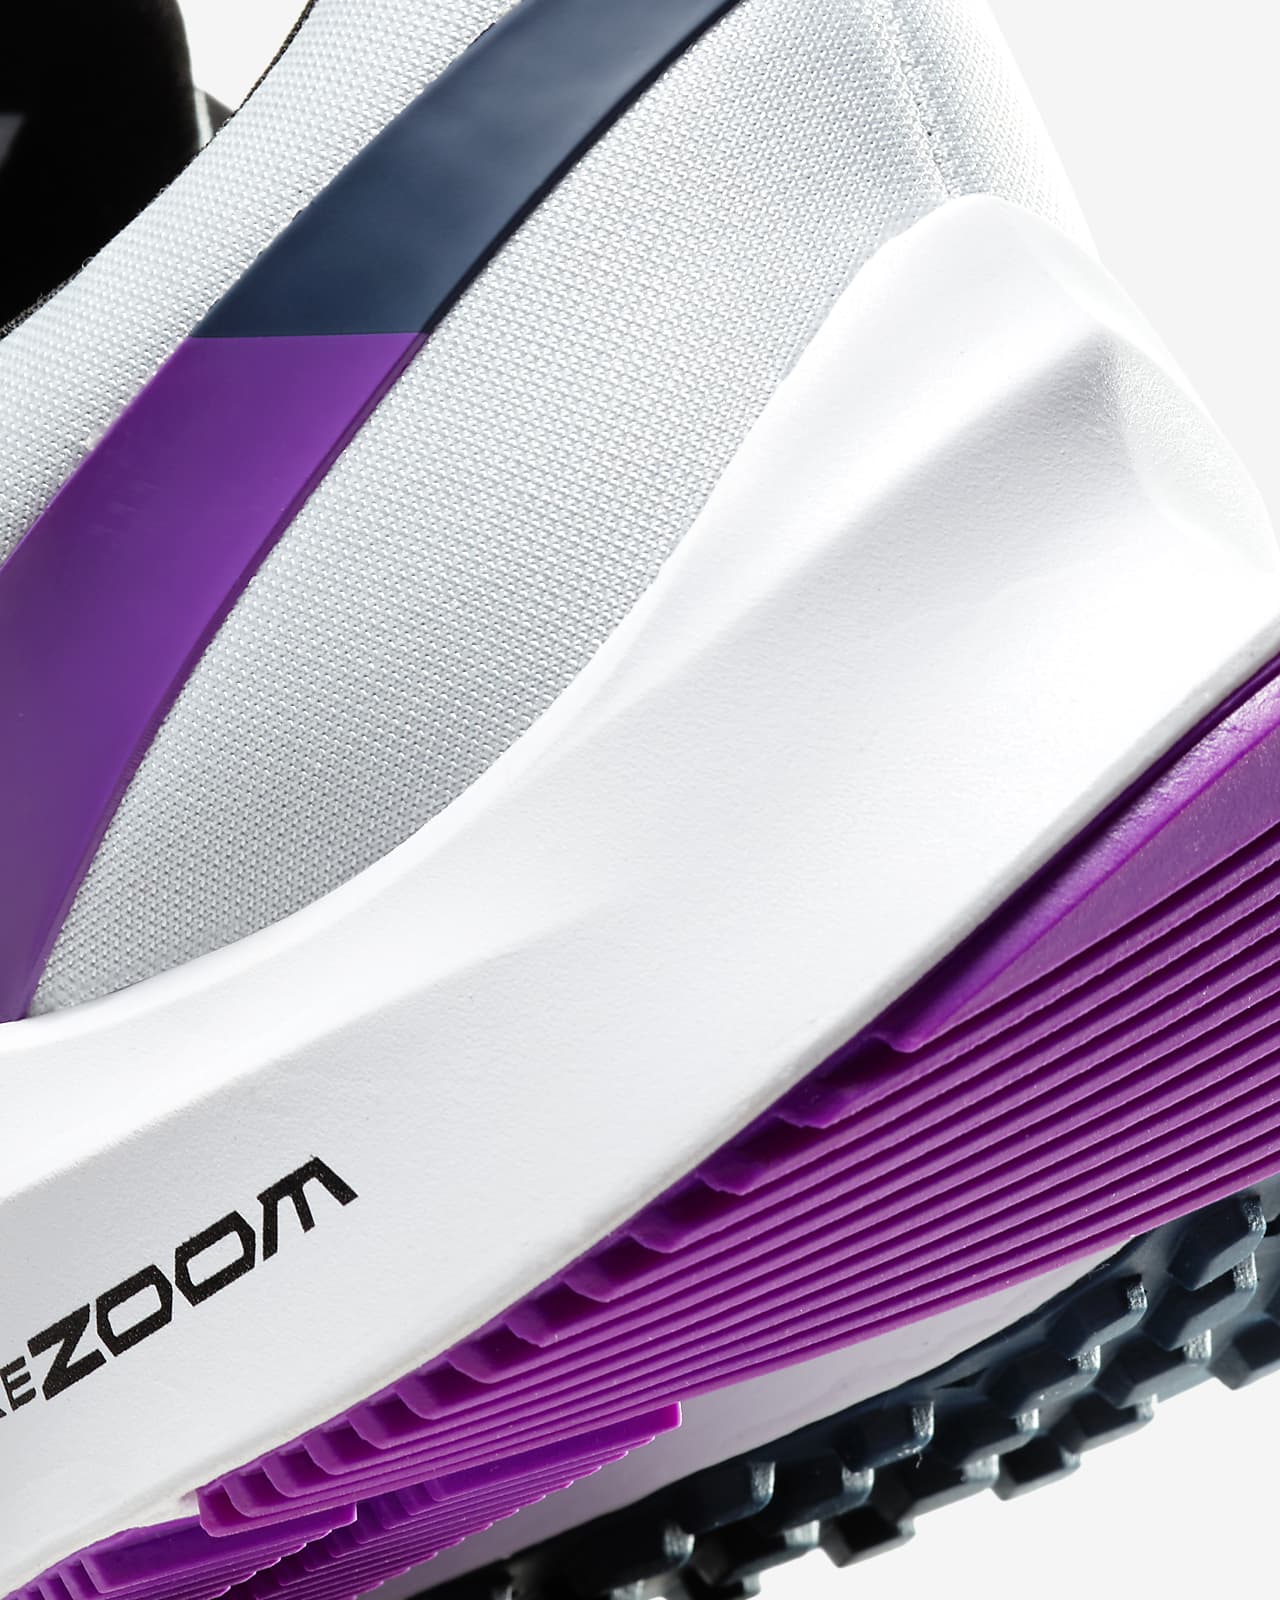 Nike Air Zoom Winflo 6 Women's Running 